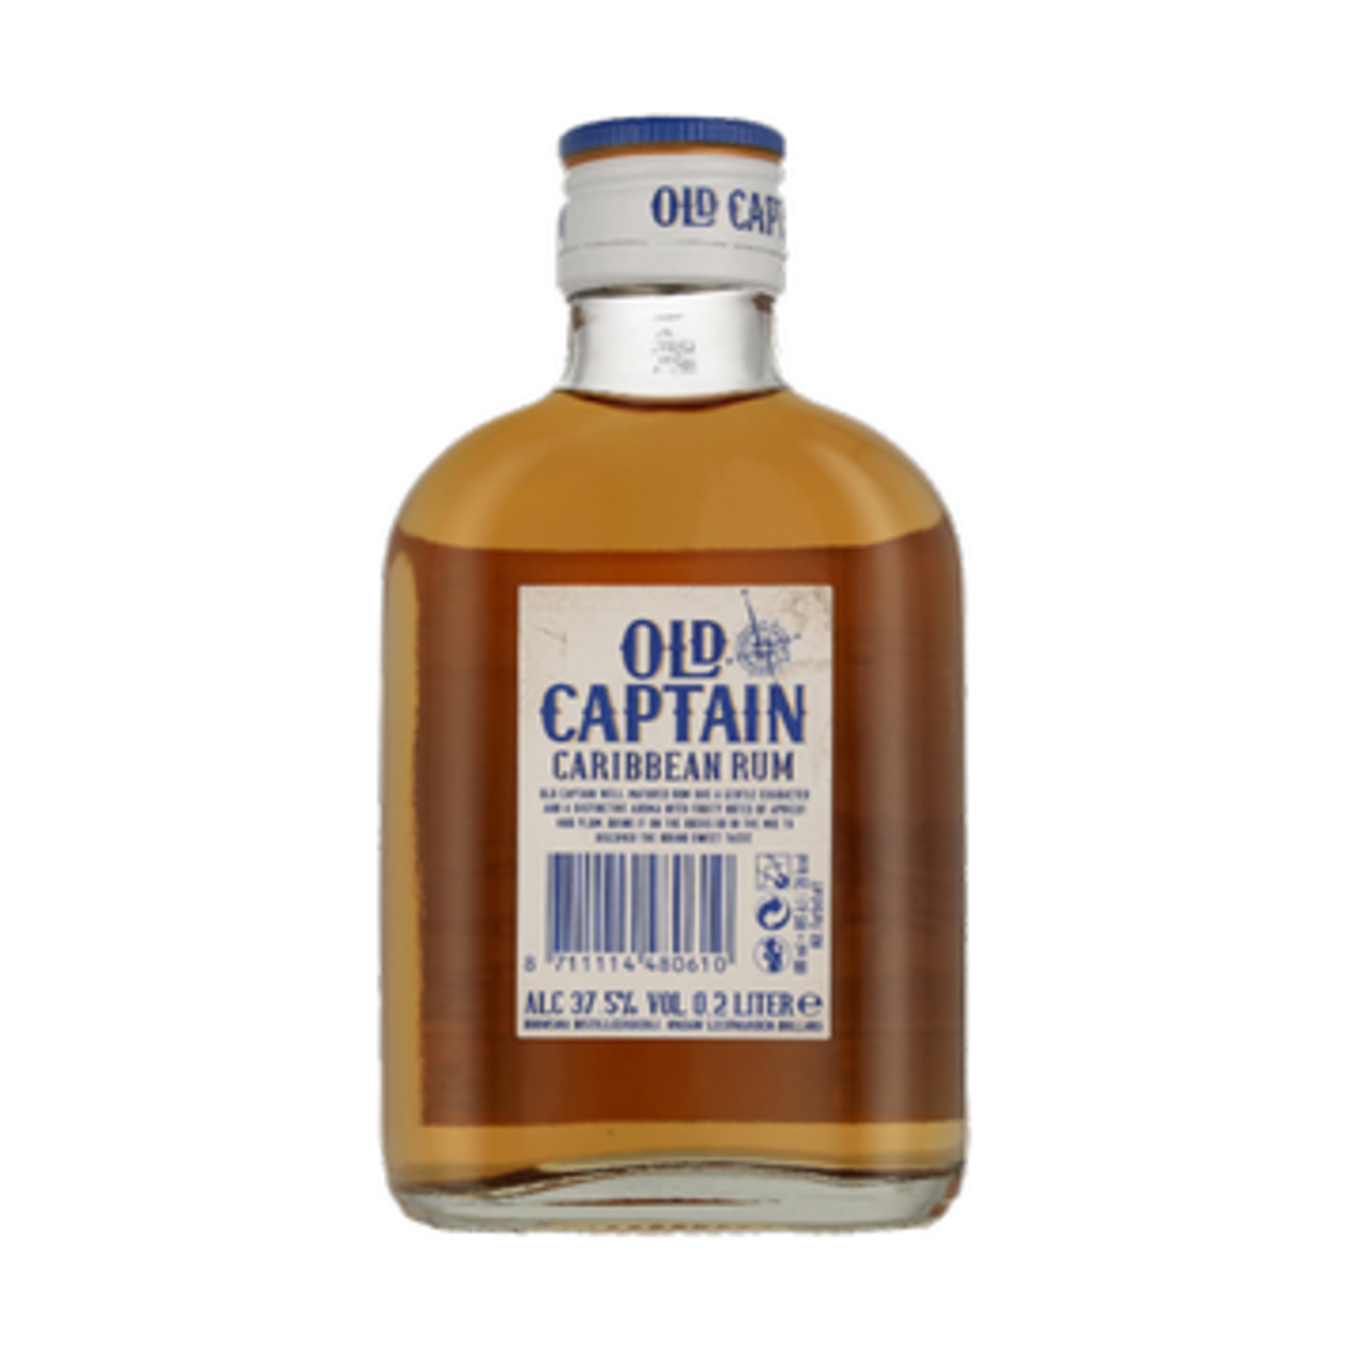 Rum Old Captain Caribbean brown 37.5% 0.2 l